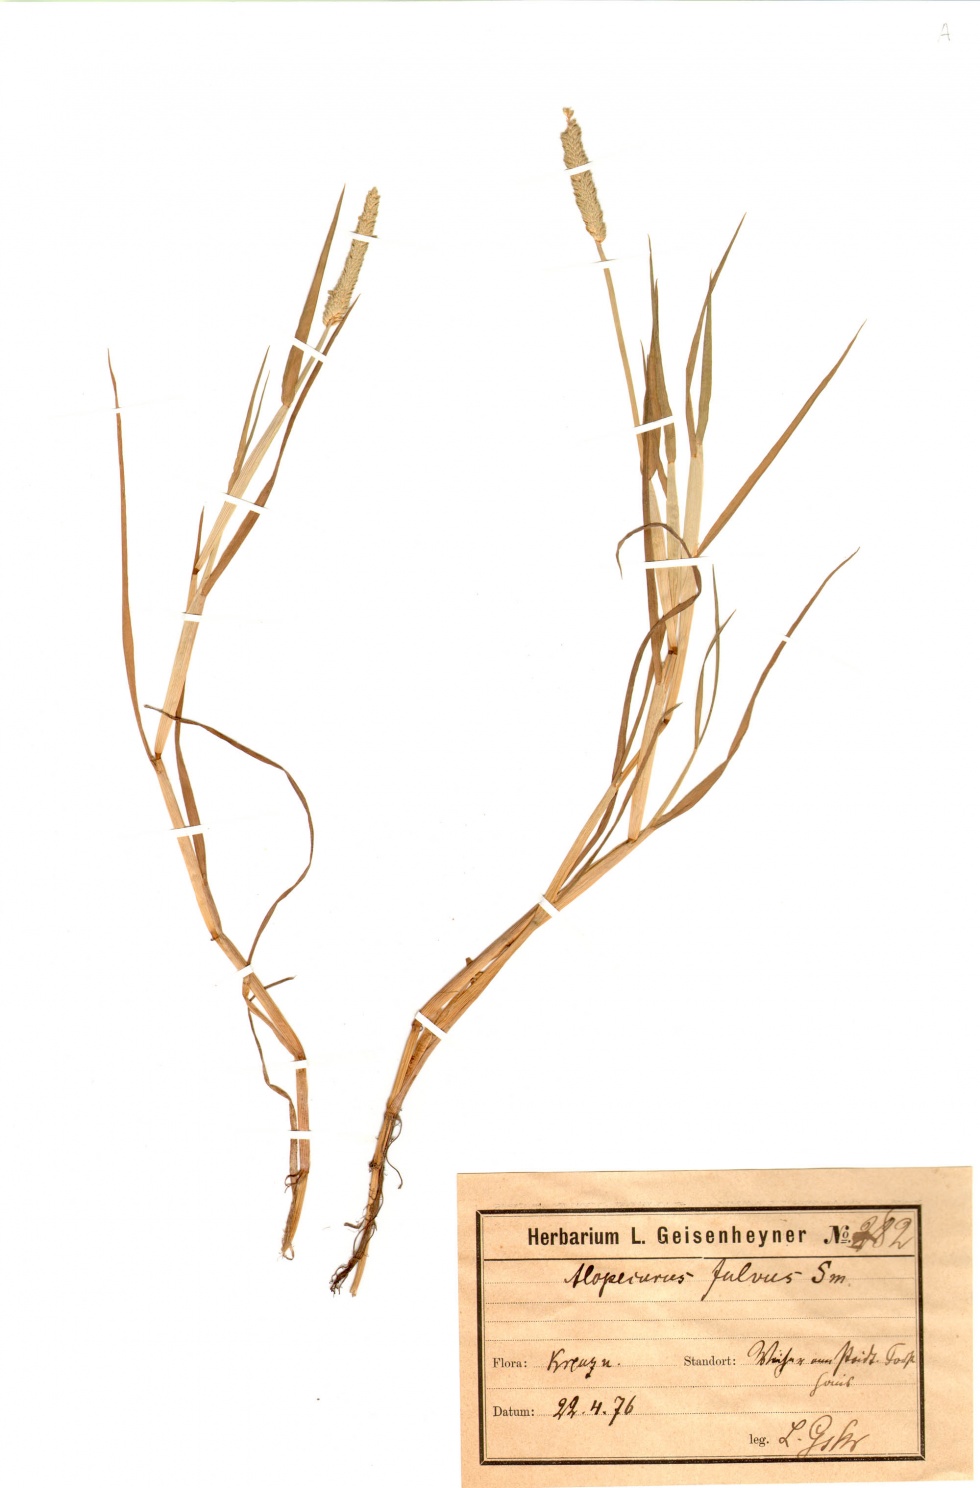 Rotgelbes Fuchsschwanzgras - Alopecurus aequalis Sobol. (Naturhistorisches Museum Mainz / Landessammlung für Naturkunde Rheinland-Pfalz CC BY-NC-SA)